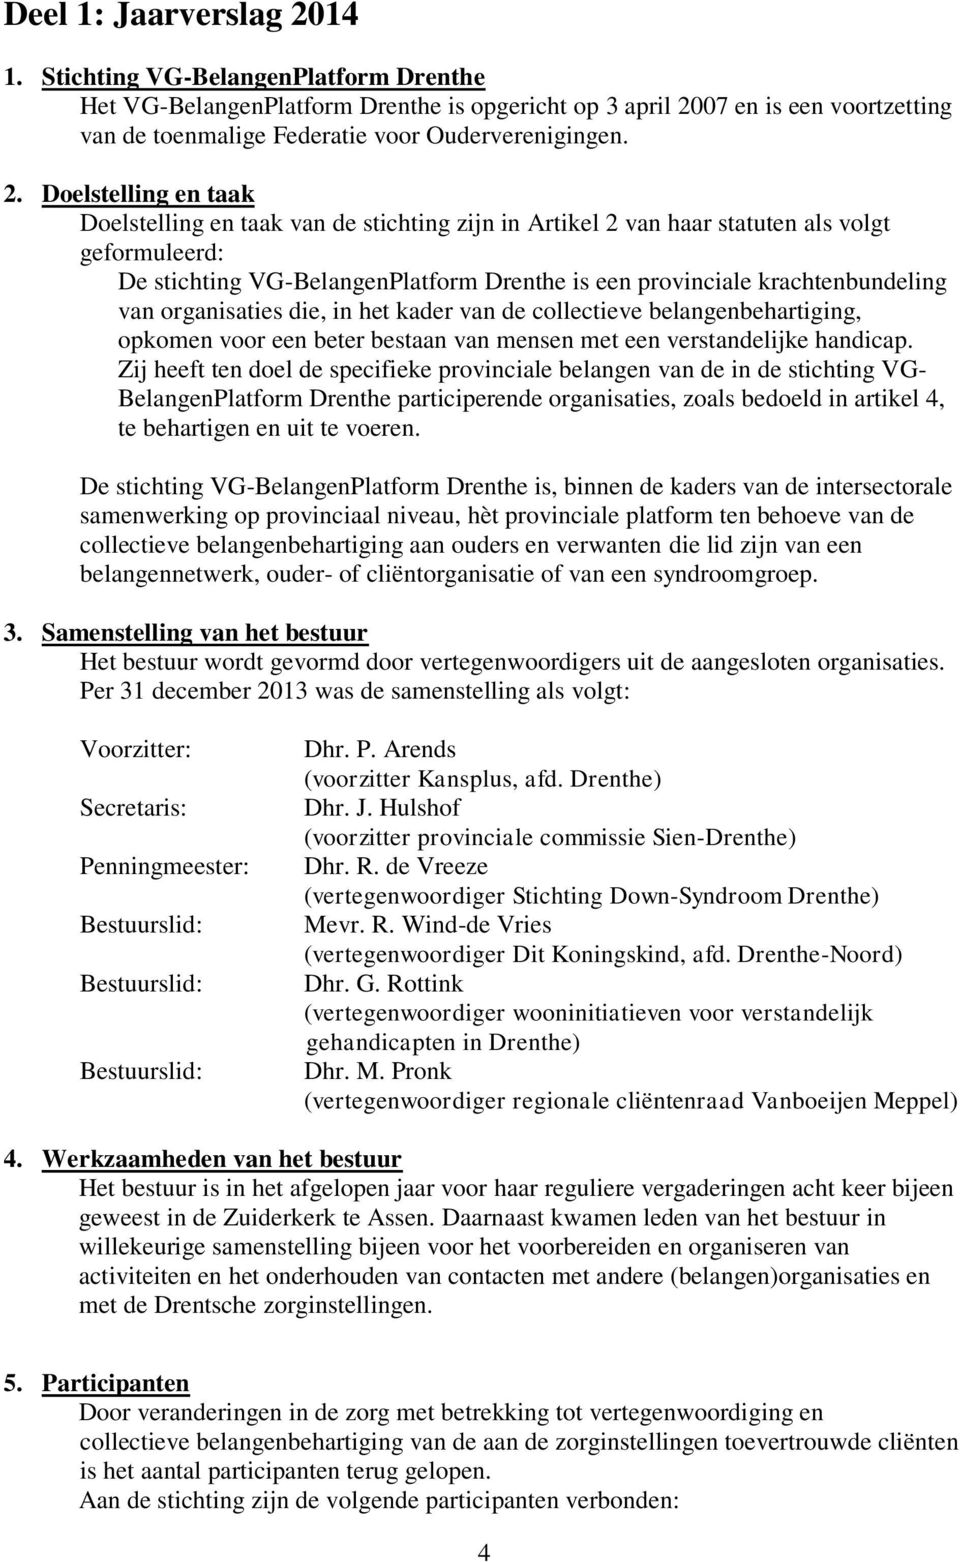 Doelstelling en taak Doelstelling en taak van de stichting zijn in Artikel 2 van haar statuten als volgt geformuleerd: De stichting VG-BelangenPlatform Drenthe is een provinciale krachtenbundeling